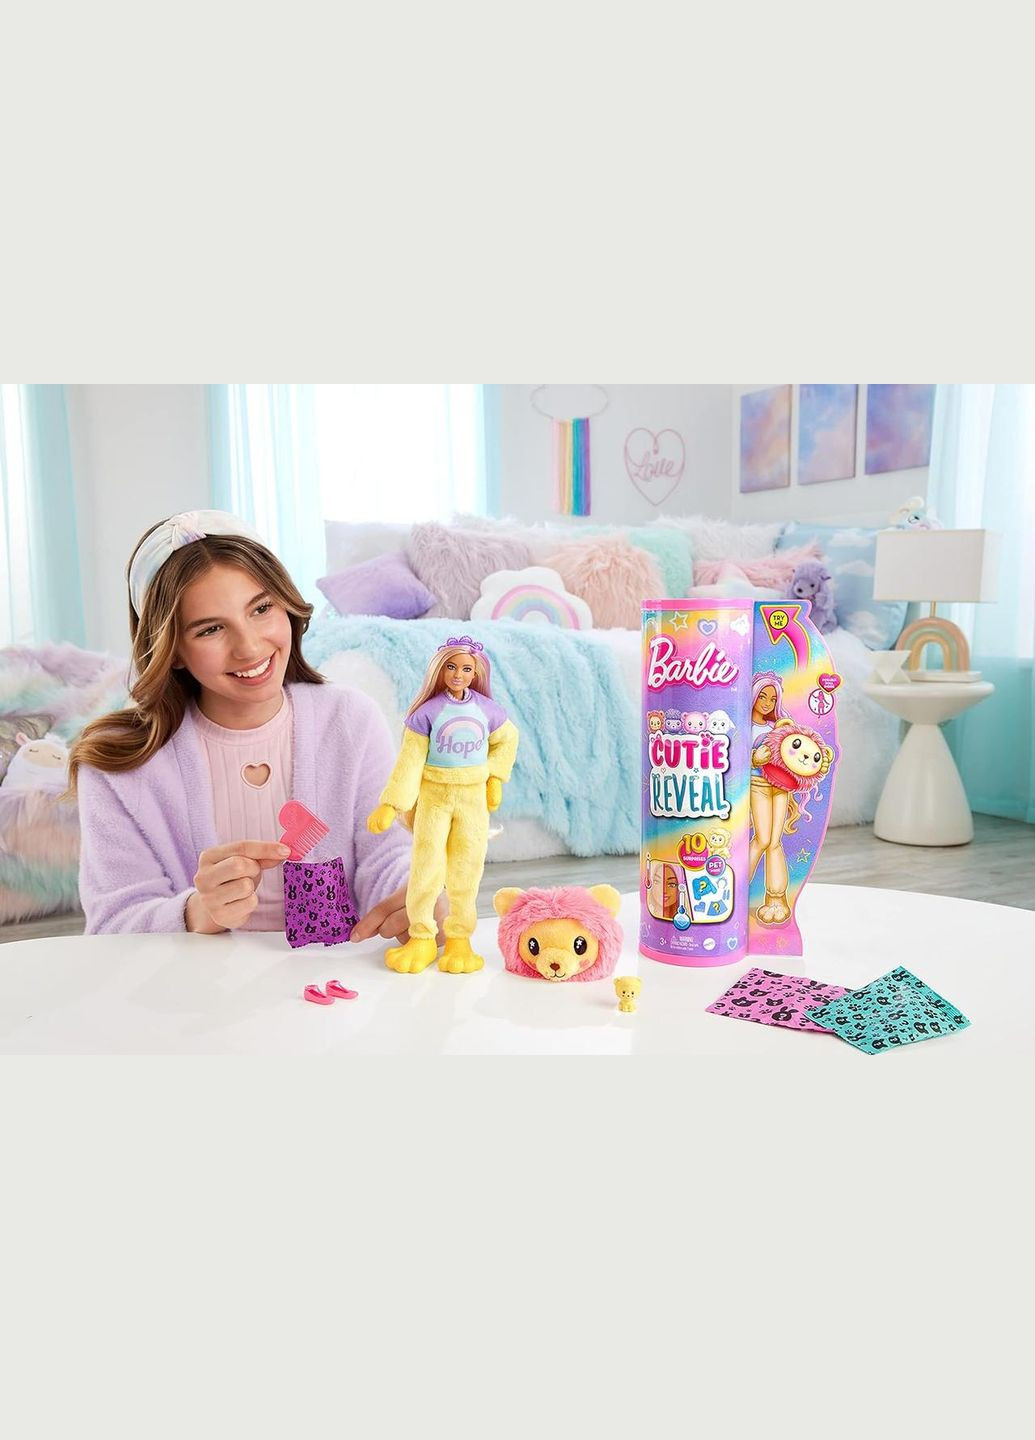 Лялька Barbie Cutie Reveal c жовтим волоссям і в костюмі лева Mattel (282964489)